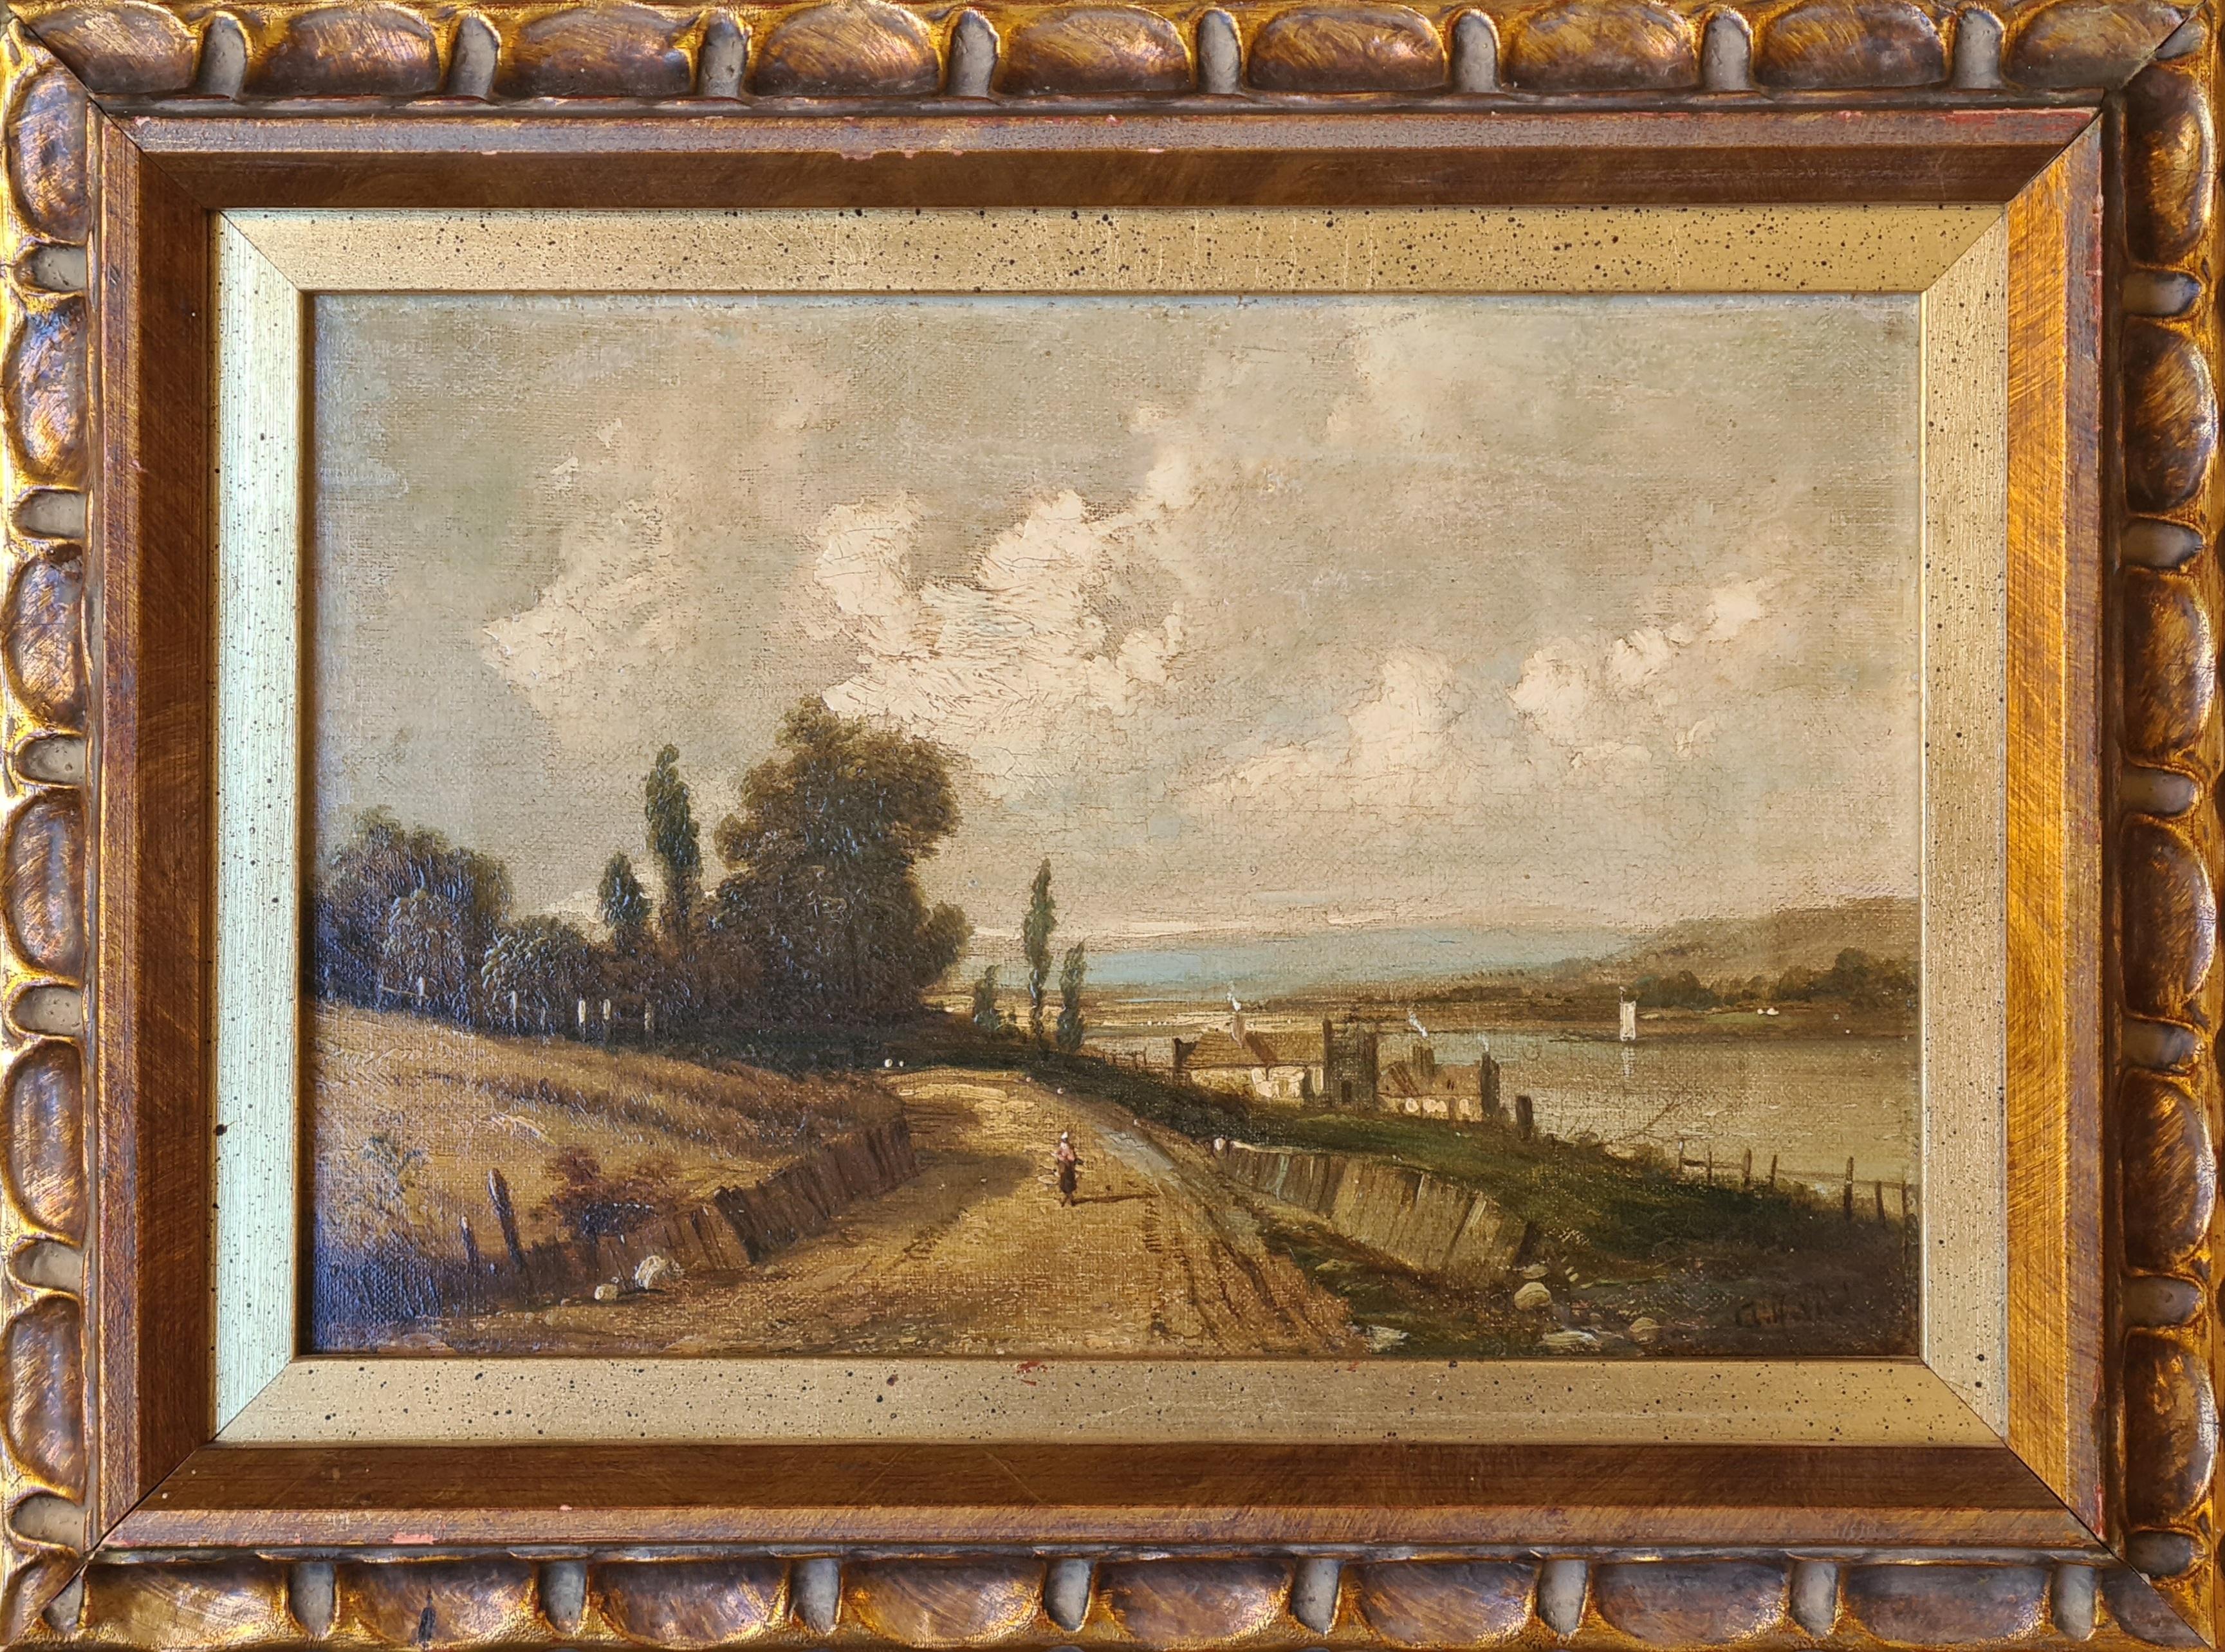 Landscape Painting Alfred Vickers - Paysage anglais d'époque Barbizon, huile sur toile, cercle de John Constable